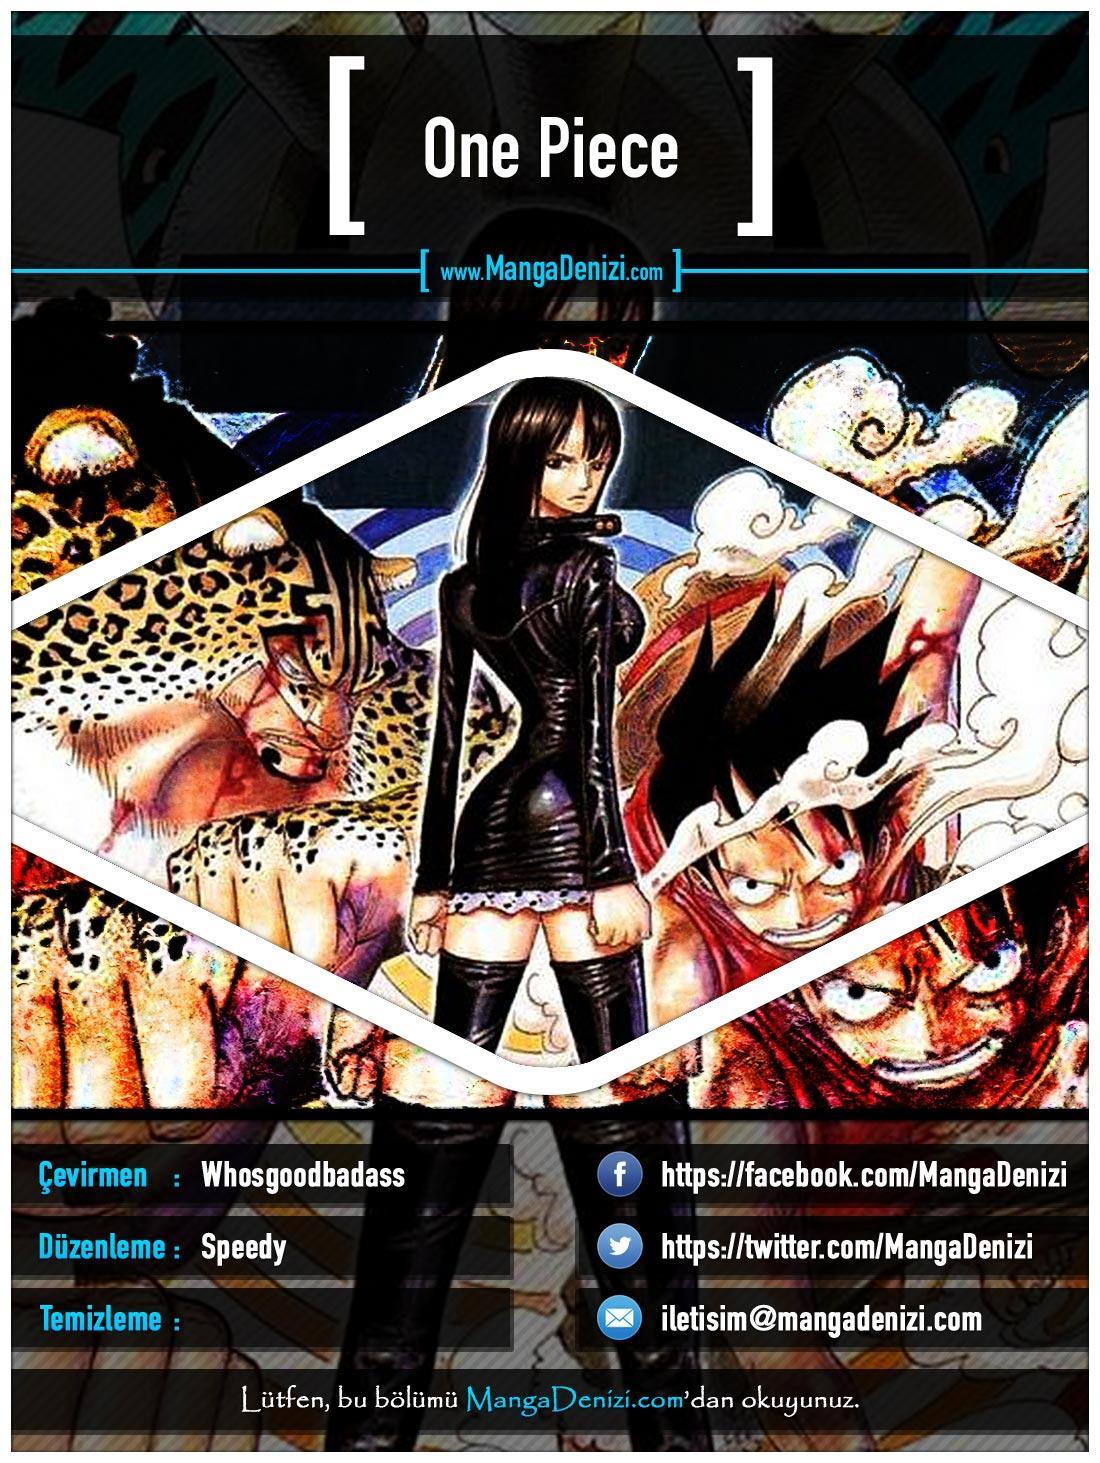 One Piece [Renkli] mangasının 0393 bölümünün 1. sayfasını okuyorsunuz.